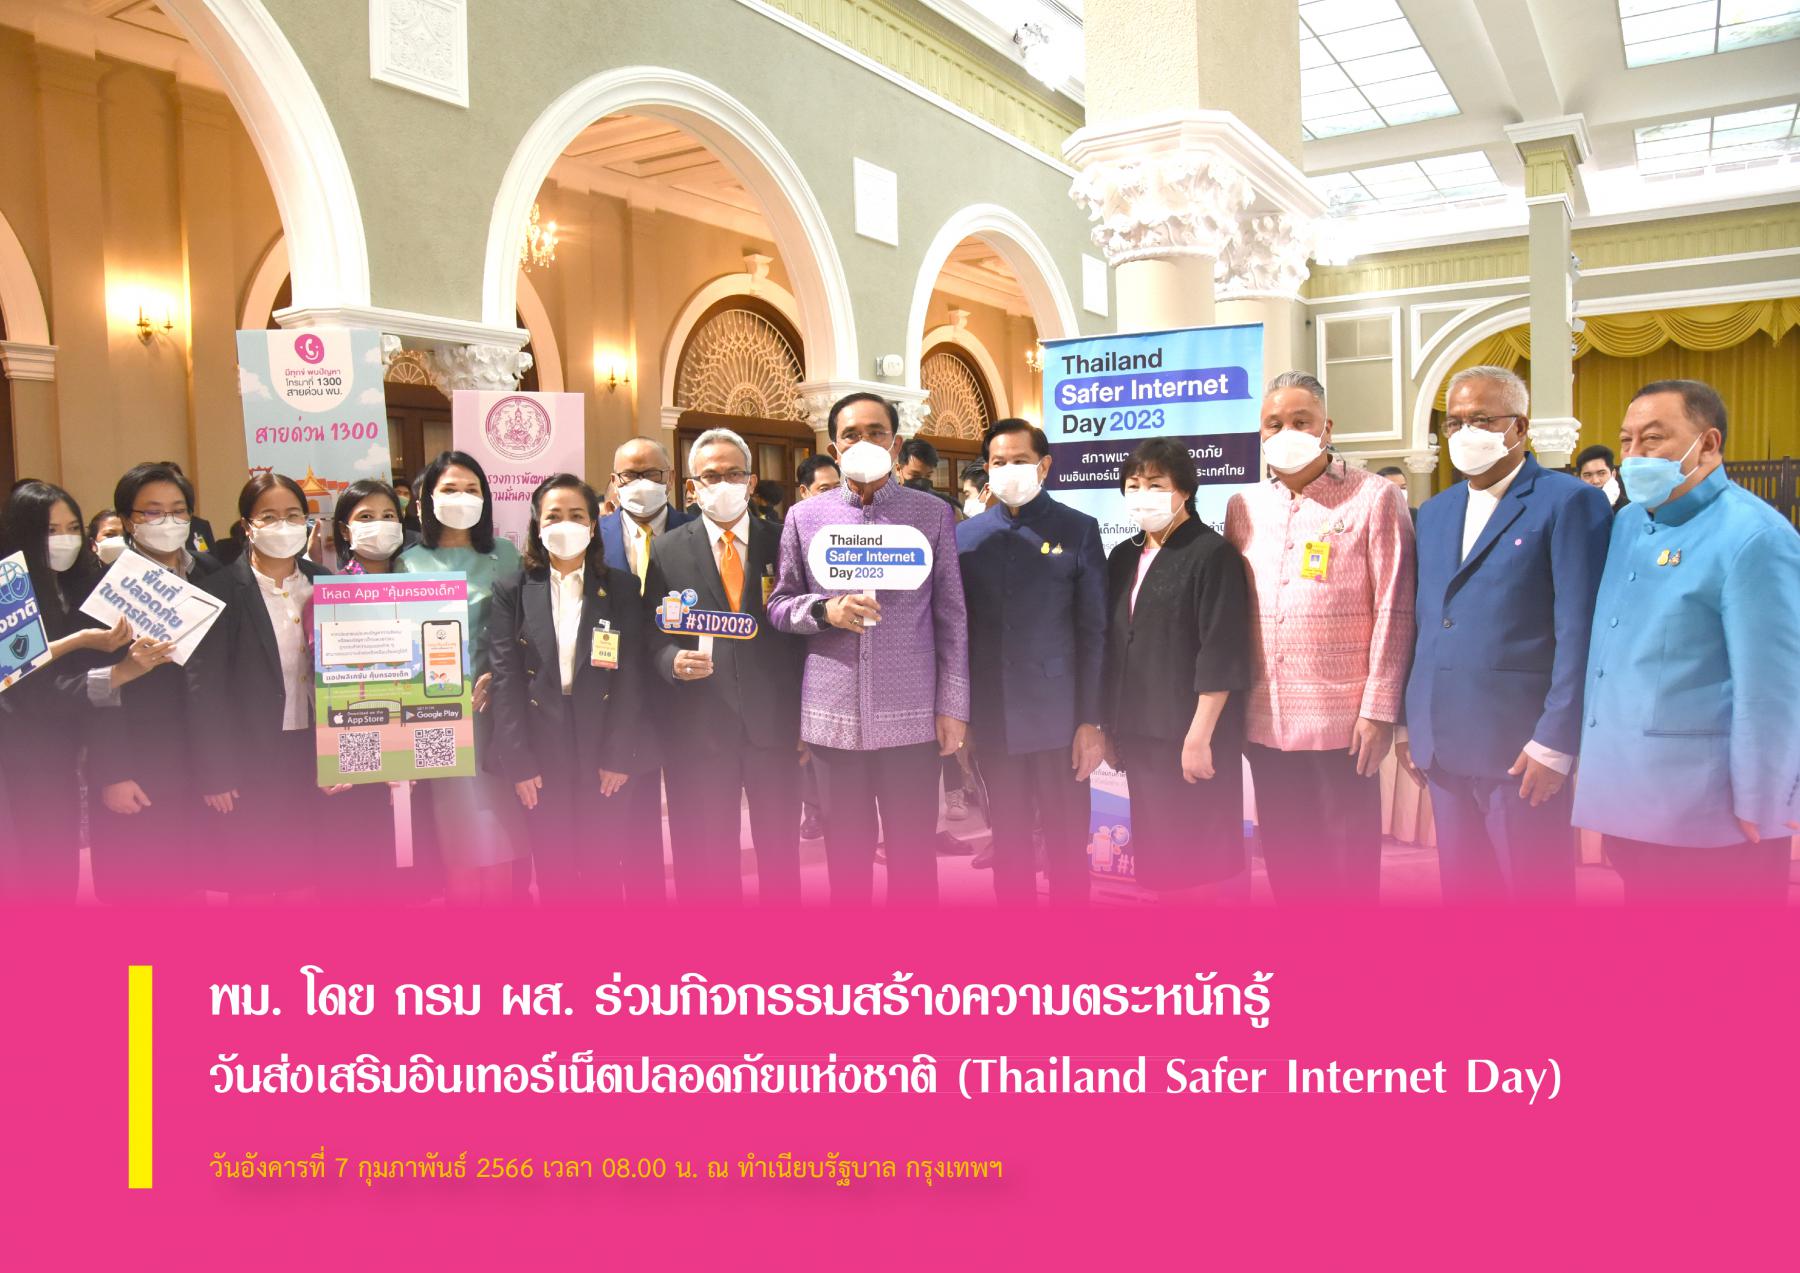 พม. โดย กรม ผส. ร่วมกิจกรรมสร้างความตระหนักรู้ วันส่งเสริมอินเทอร์เน็ตปลอดภัยแห่งชาติ (Thailand Safer Internet Day)